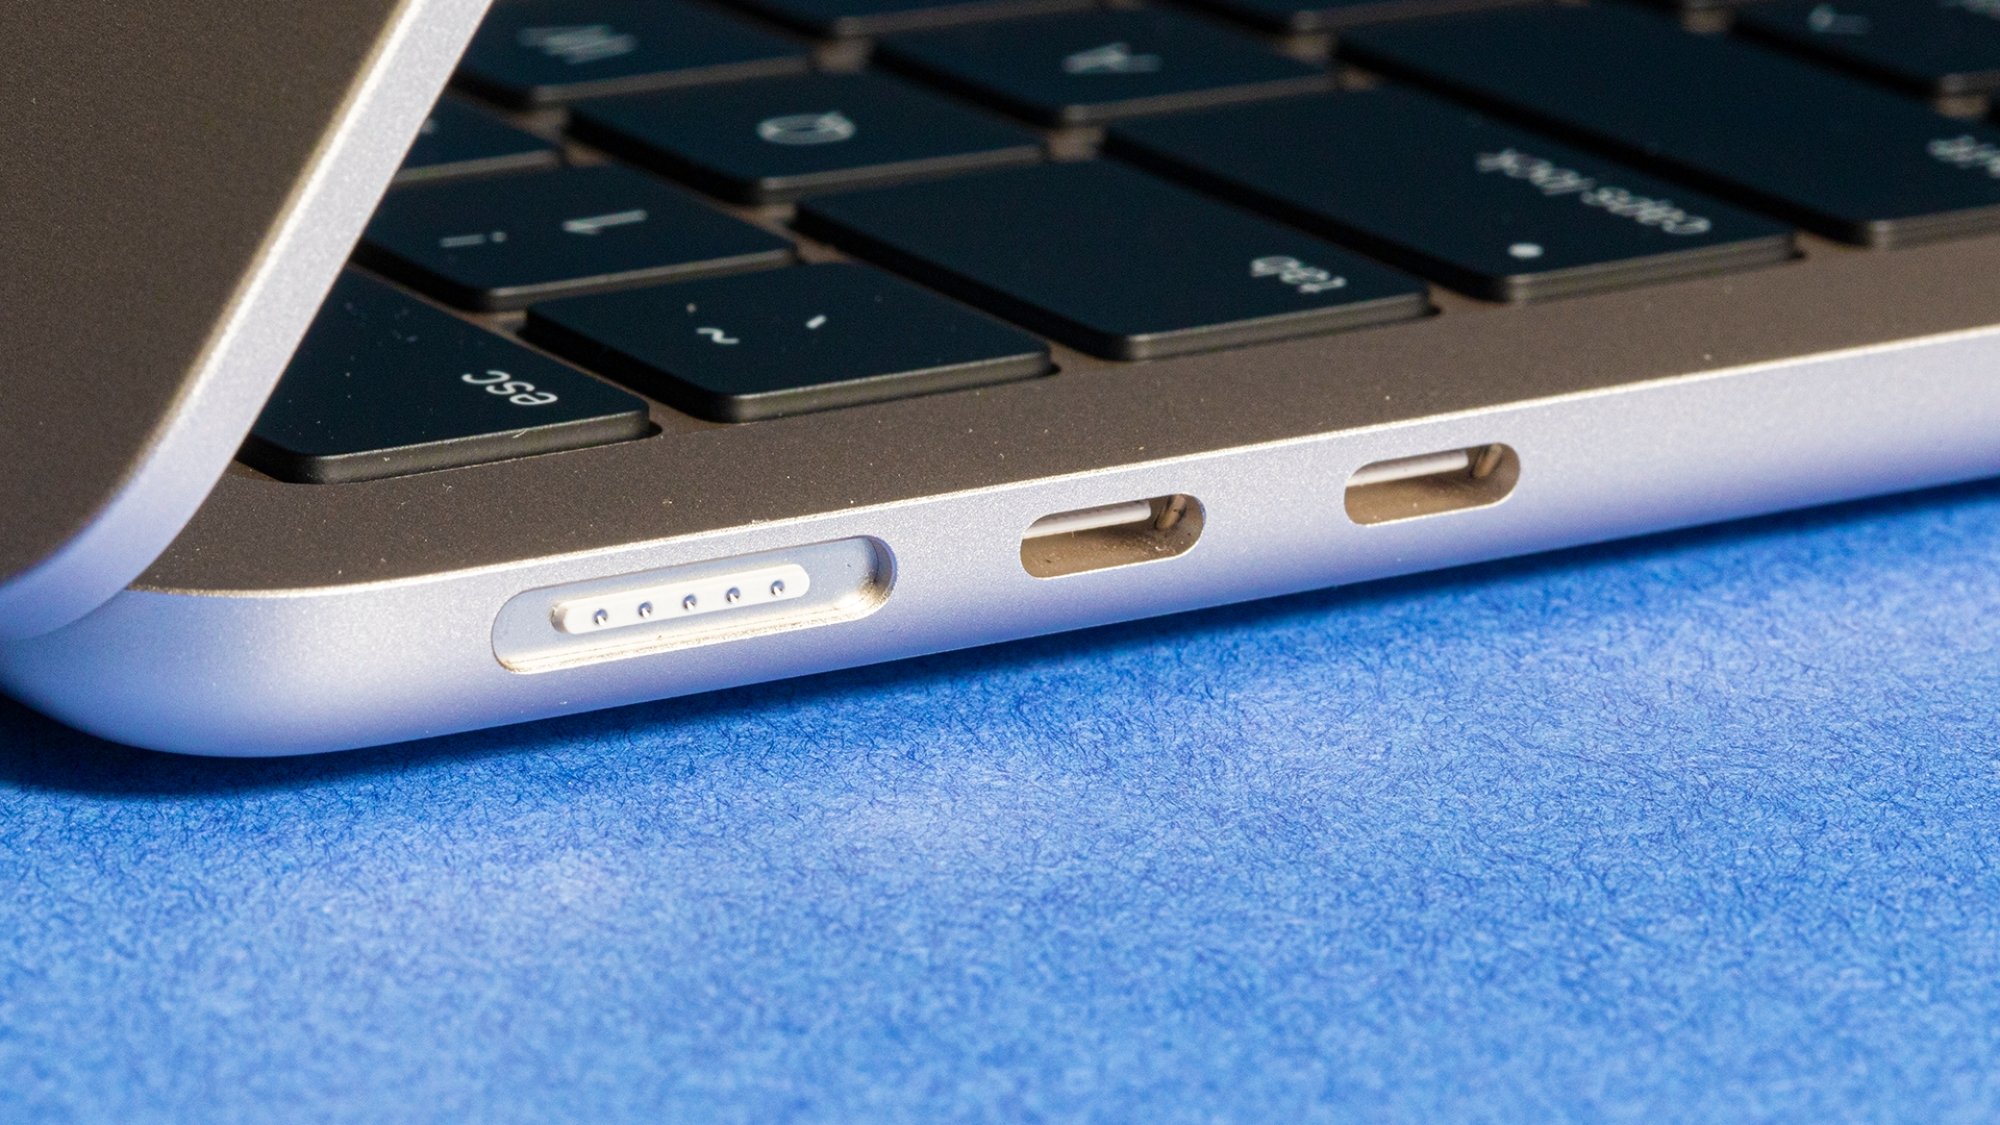 Una vista del puerto de carga MagSafe de la MacBook Air 2022 M2, así como de los puertos Thunderbolt/USB-C